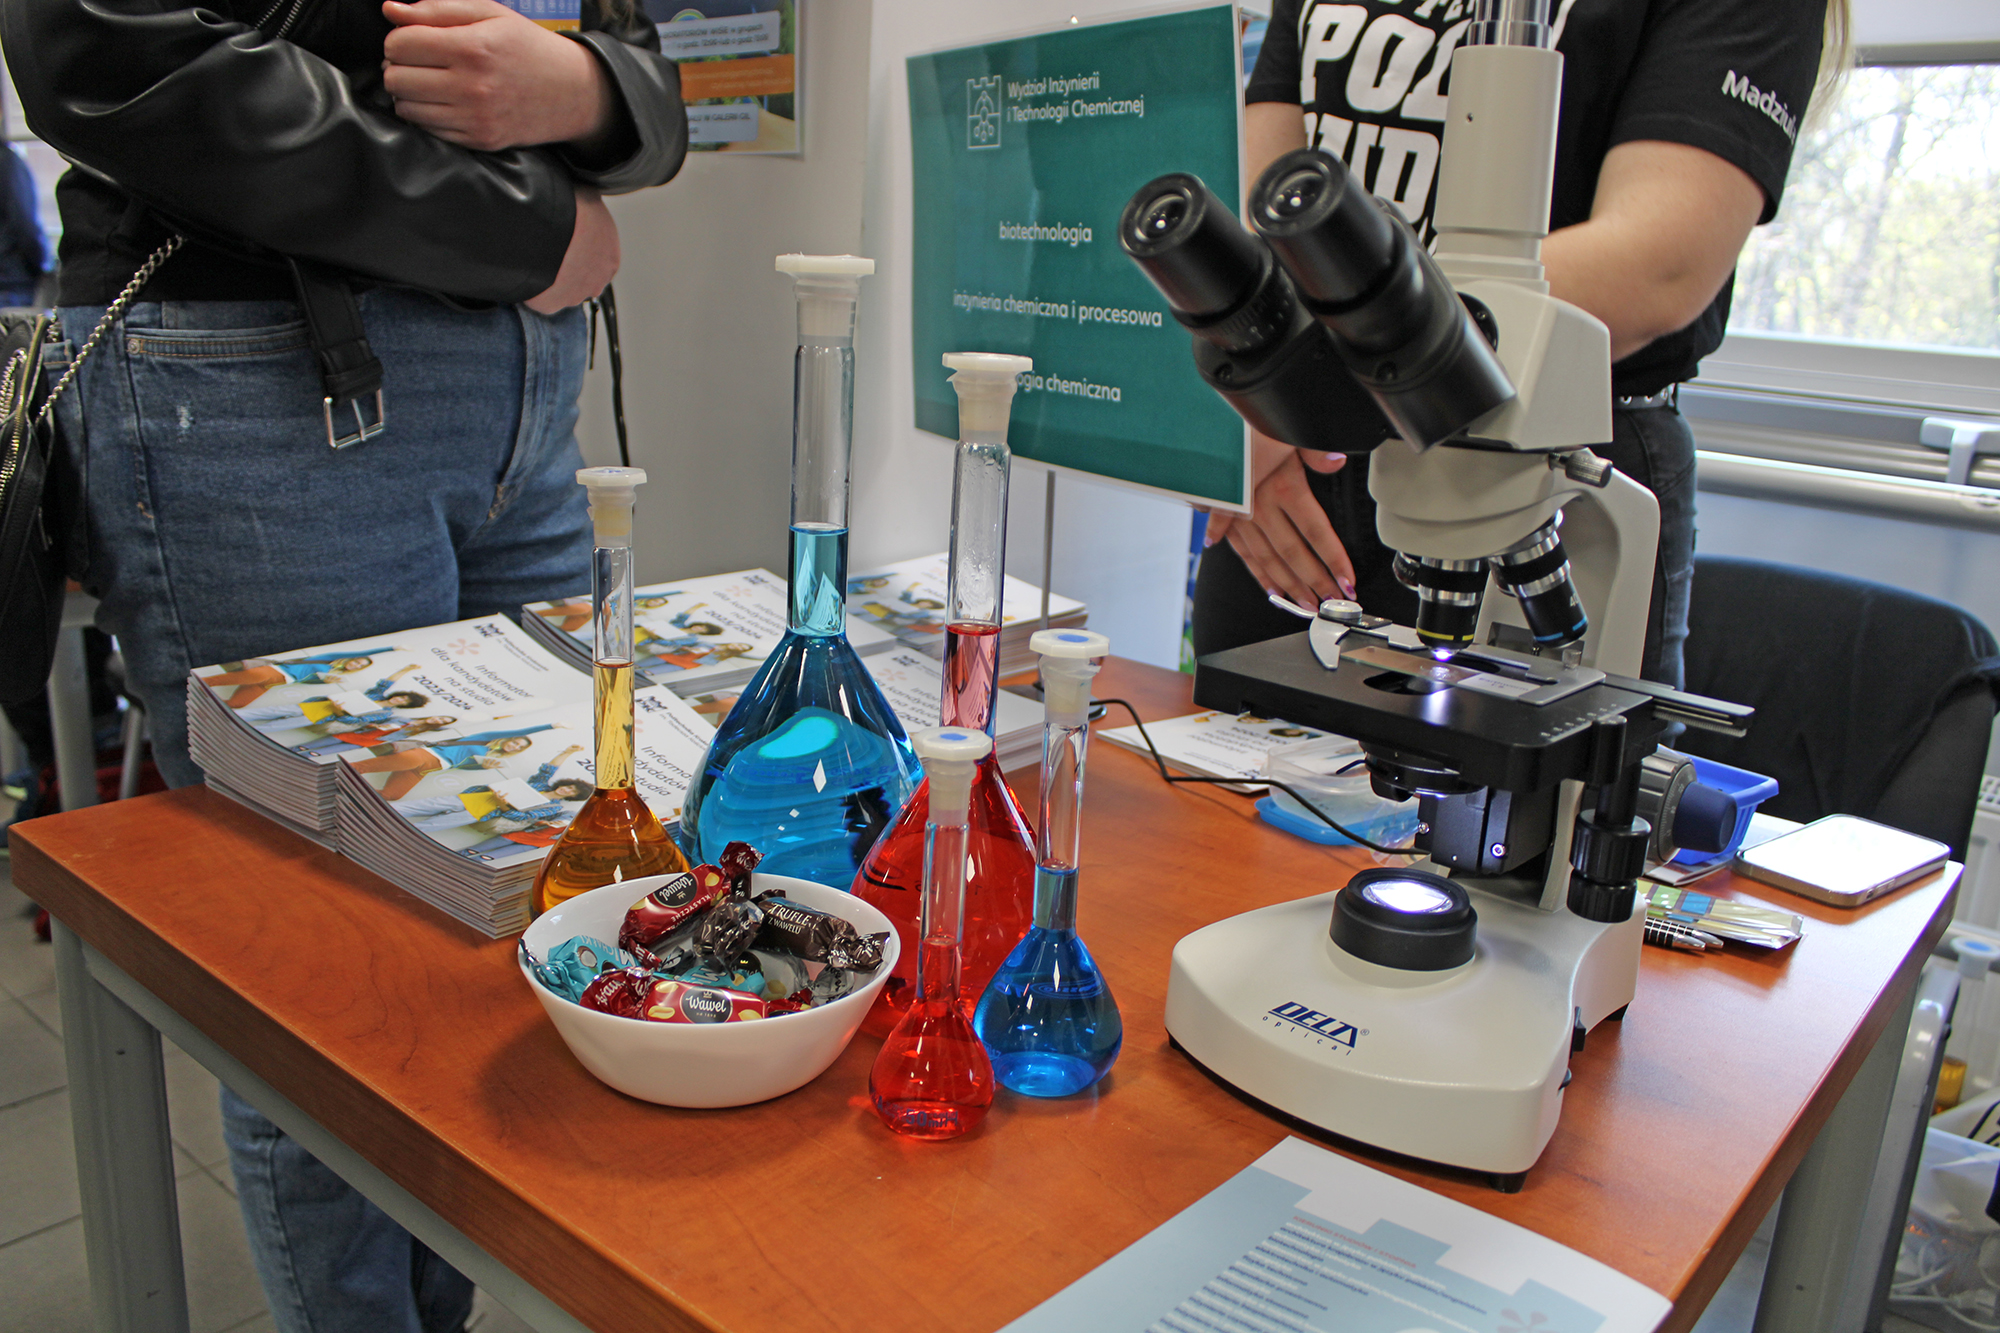 Aparatura laboratoryjna: mikroskop i kolby z kolorowymi płynami